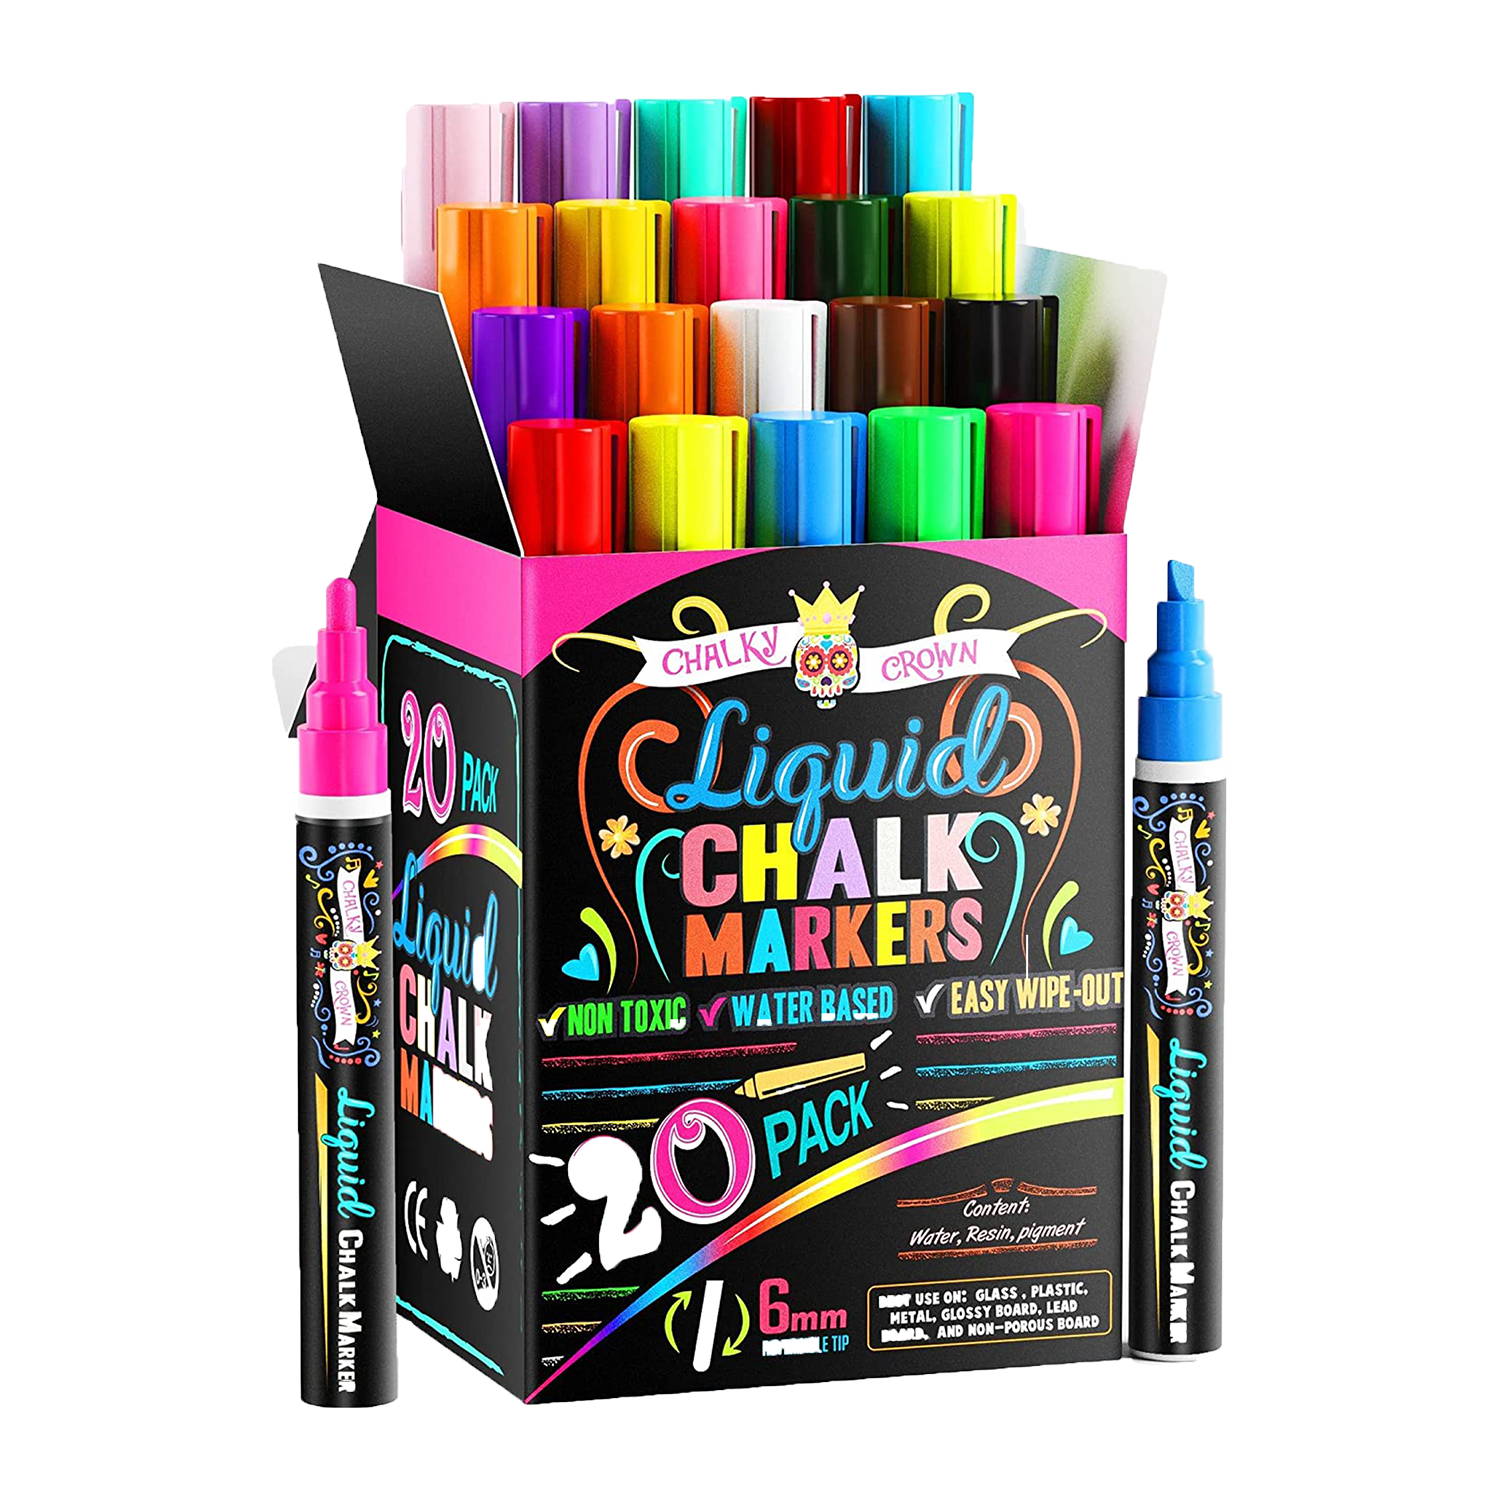 Liquid Chalk Marker, Neon Markers, Chalk Pen, Wet Erase Markers, 6mm  Reversible Chisel Tip, 8 Pack Marker Set 